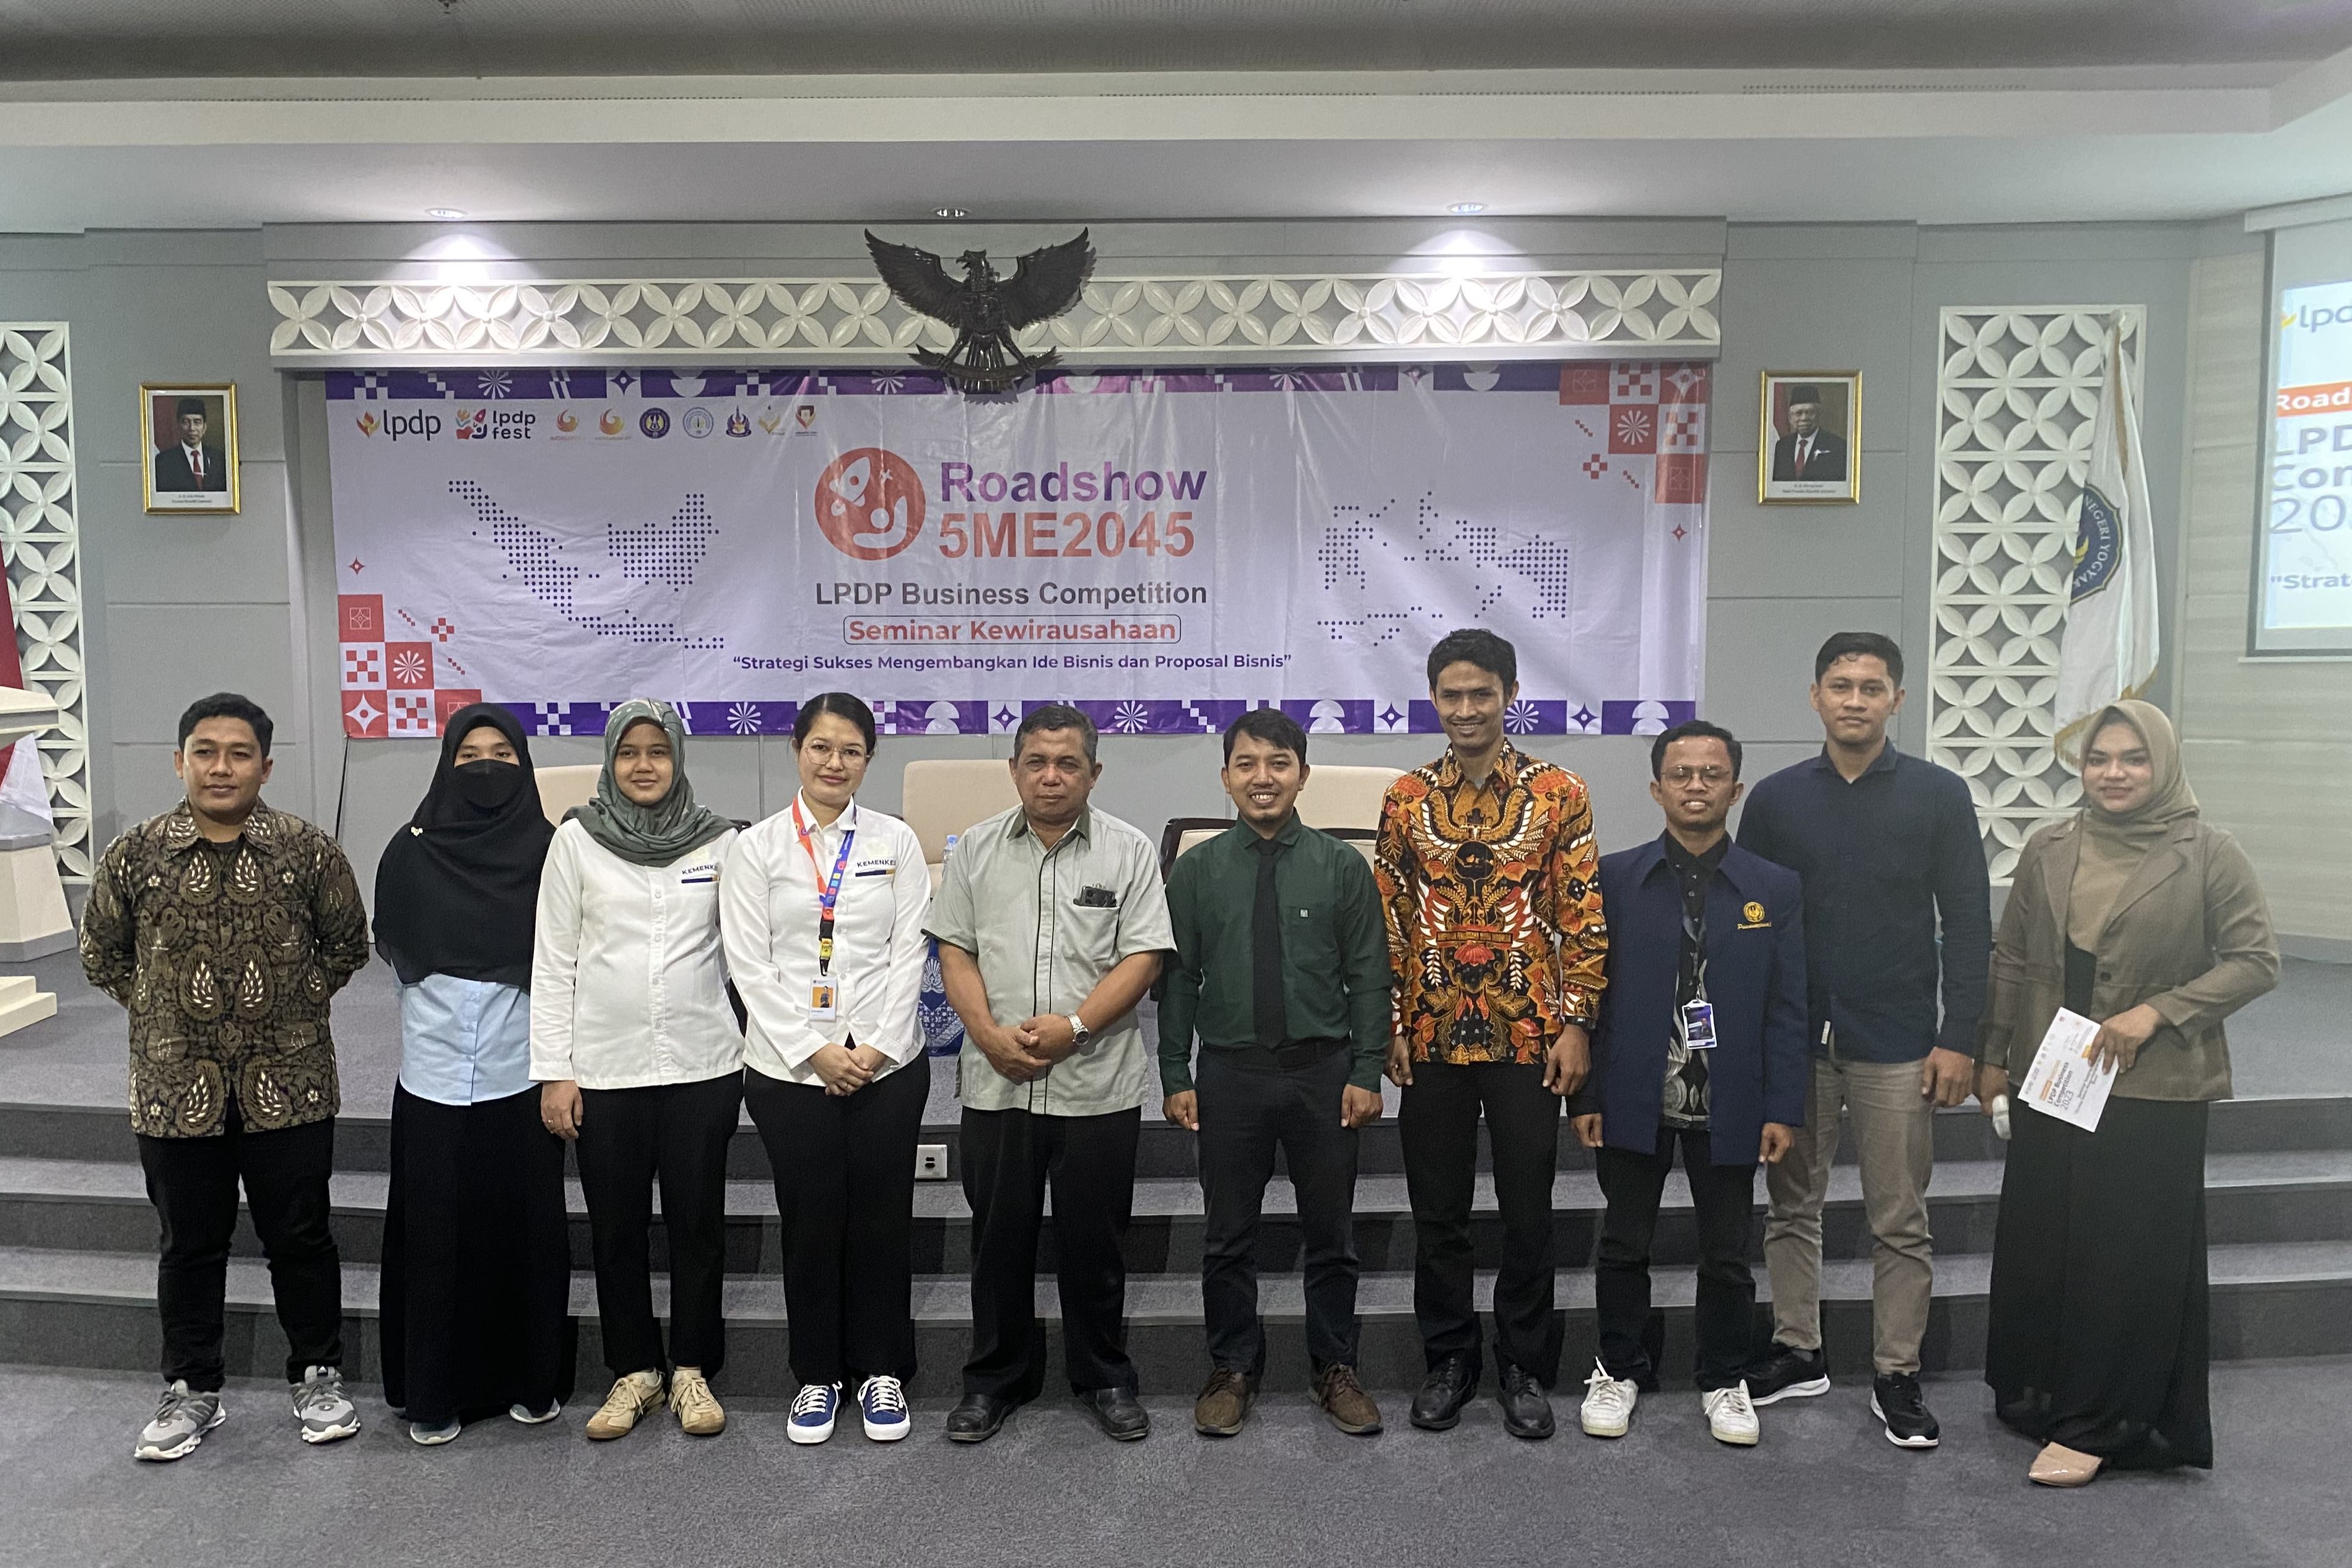 Roadshow LPDP Business Competition Yogyakarta, Mencari Ide Bisnis Kreatif Para Entrepreneur Muda